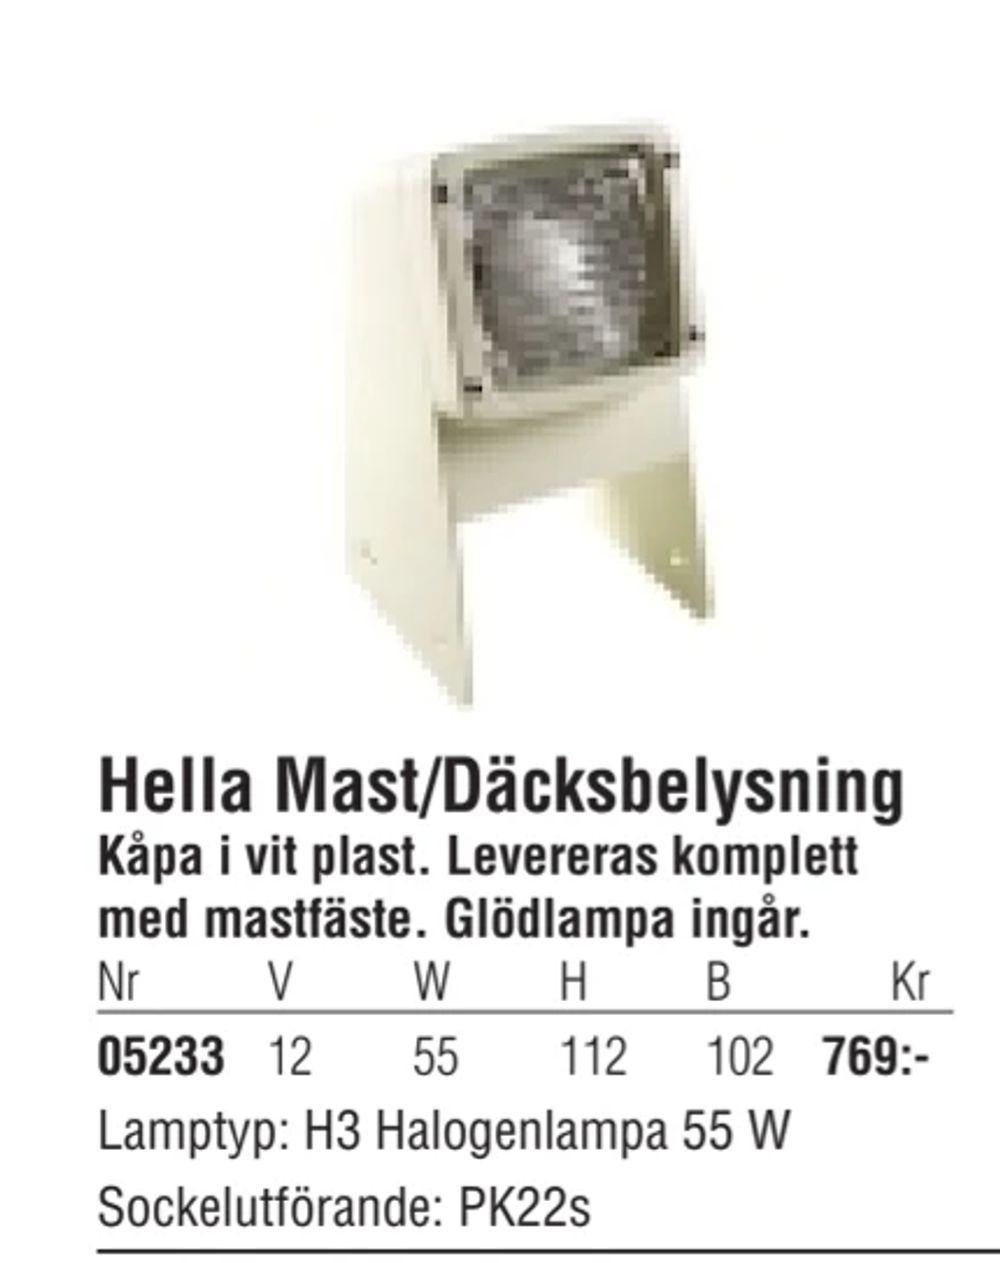 Erbjudanden på Hella Mast/Däcksbelysning från Erlandsons Brygga för 769 kr